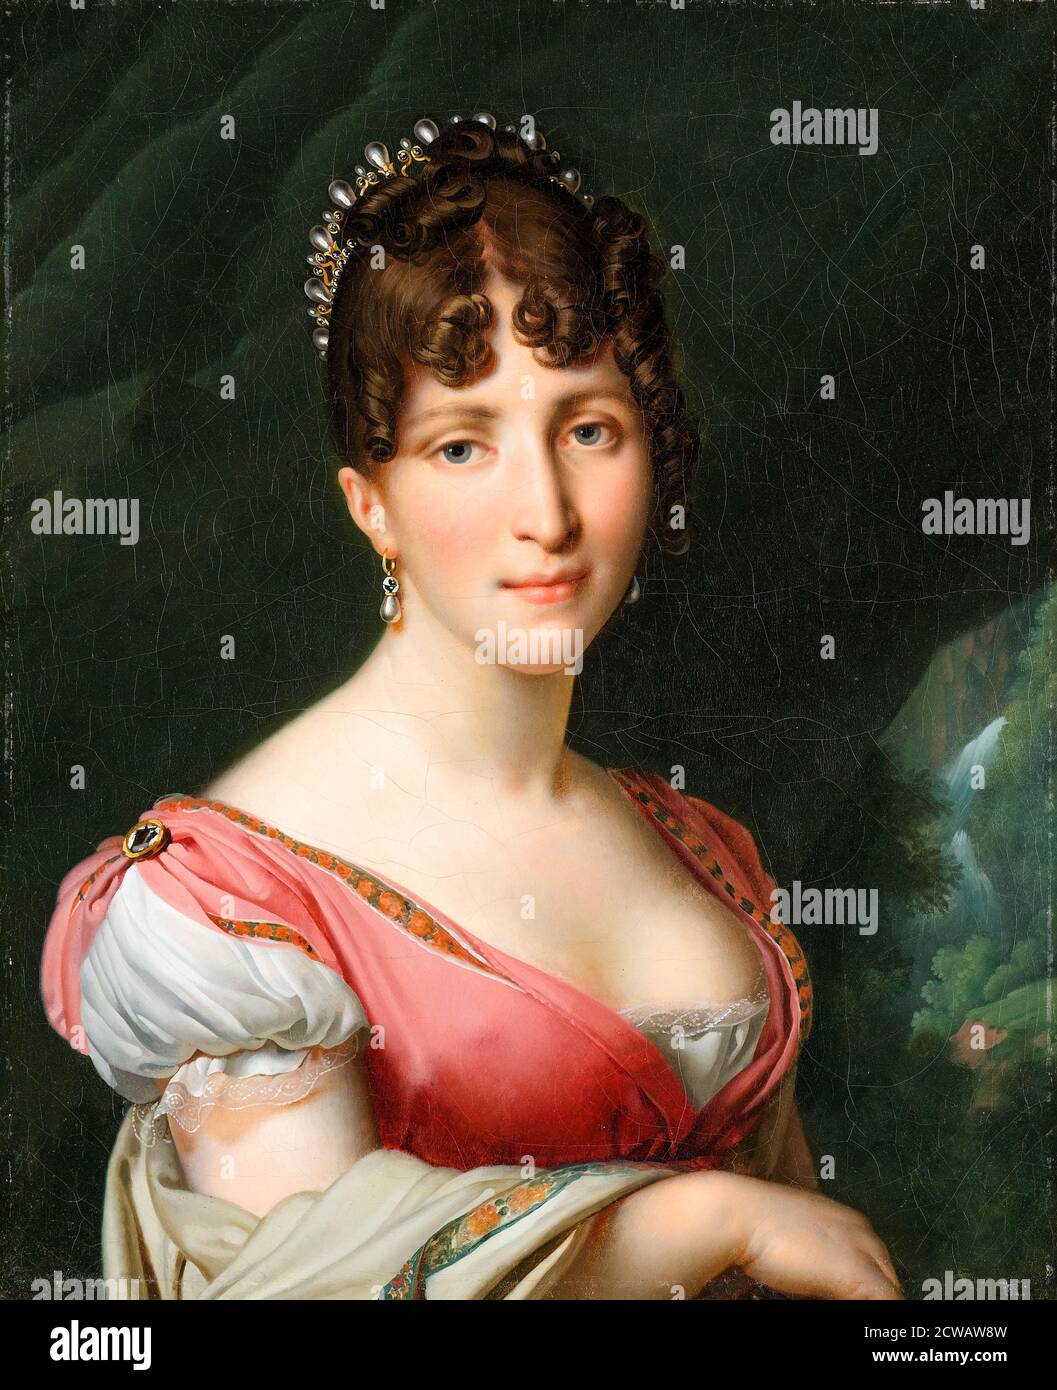 Hortense de Beauharnais (1783-1837), Queen Consort of Holland, portrait peint par Anne-Louis Girodet-Trioson, 1805-1809 Banque D'Images